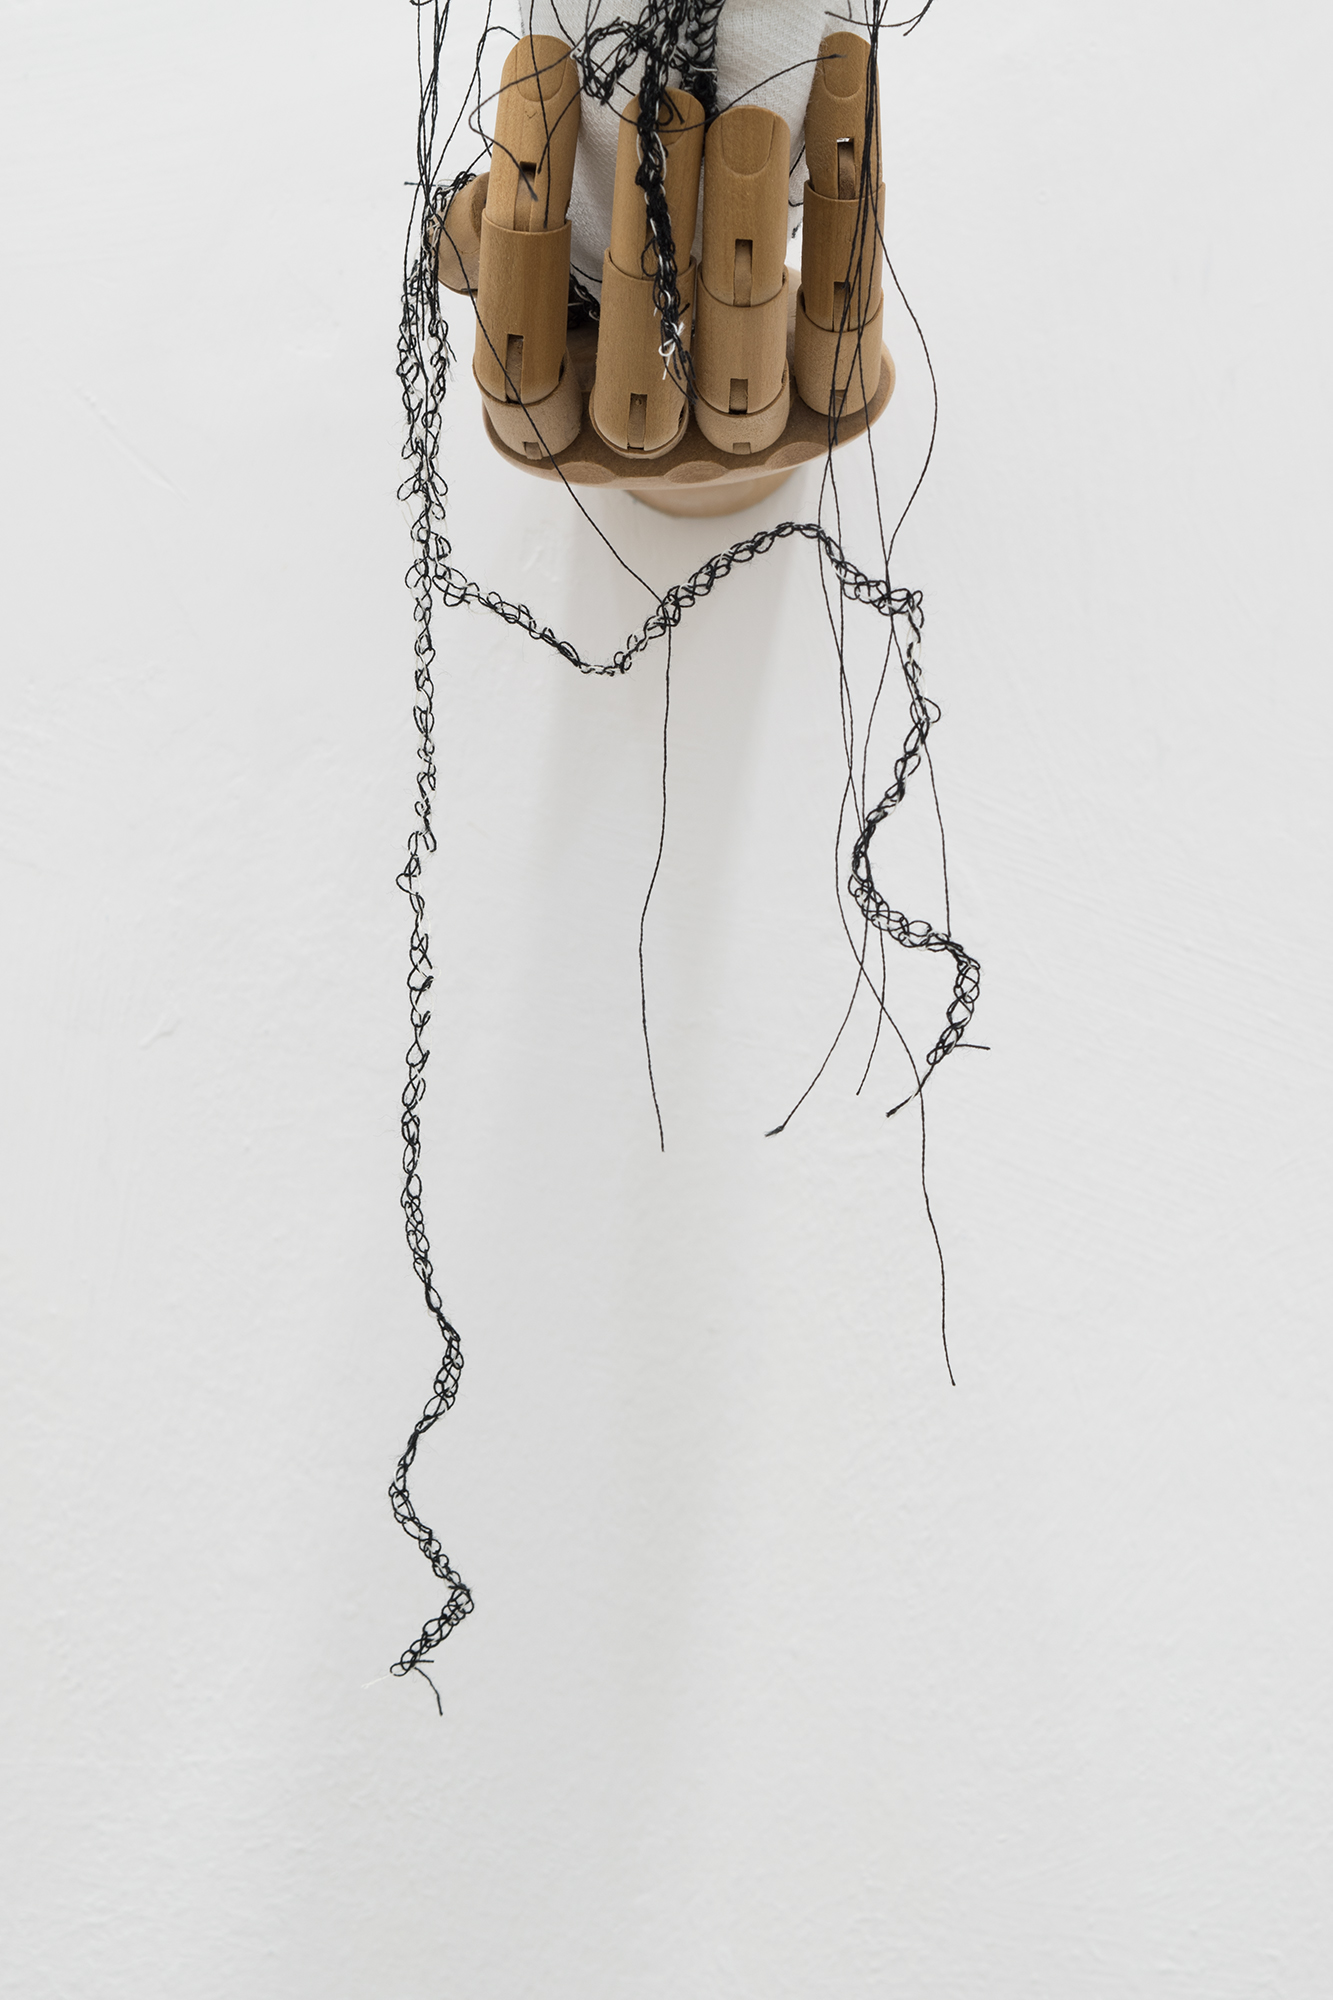 Mariantonietta Bagliato, Mannequeen, 2018, tessuto, imbottitura, manichino in legno a mano, ricamo, 15 x 12 x 24 cm (dettaglio).